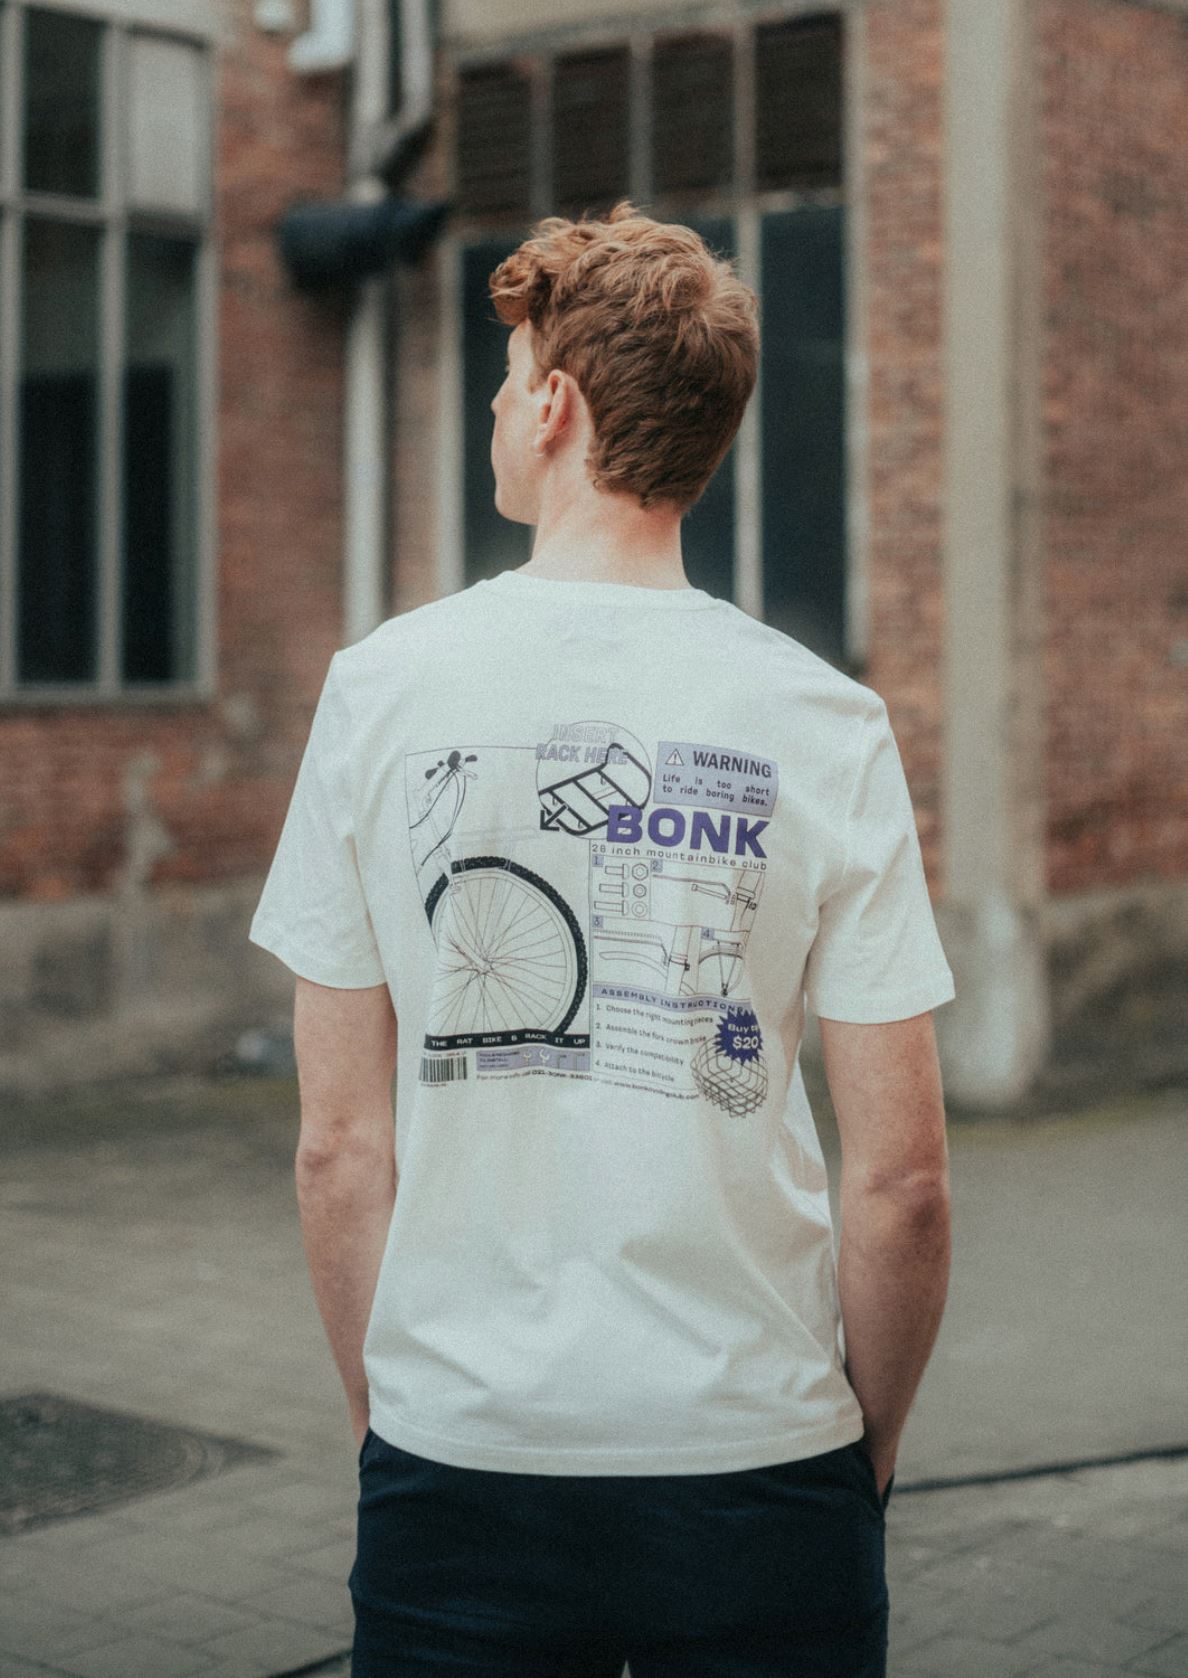 Bonk - T-Shirt Rack It Up T-Shirts Bonk 